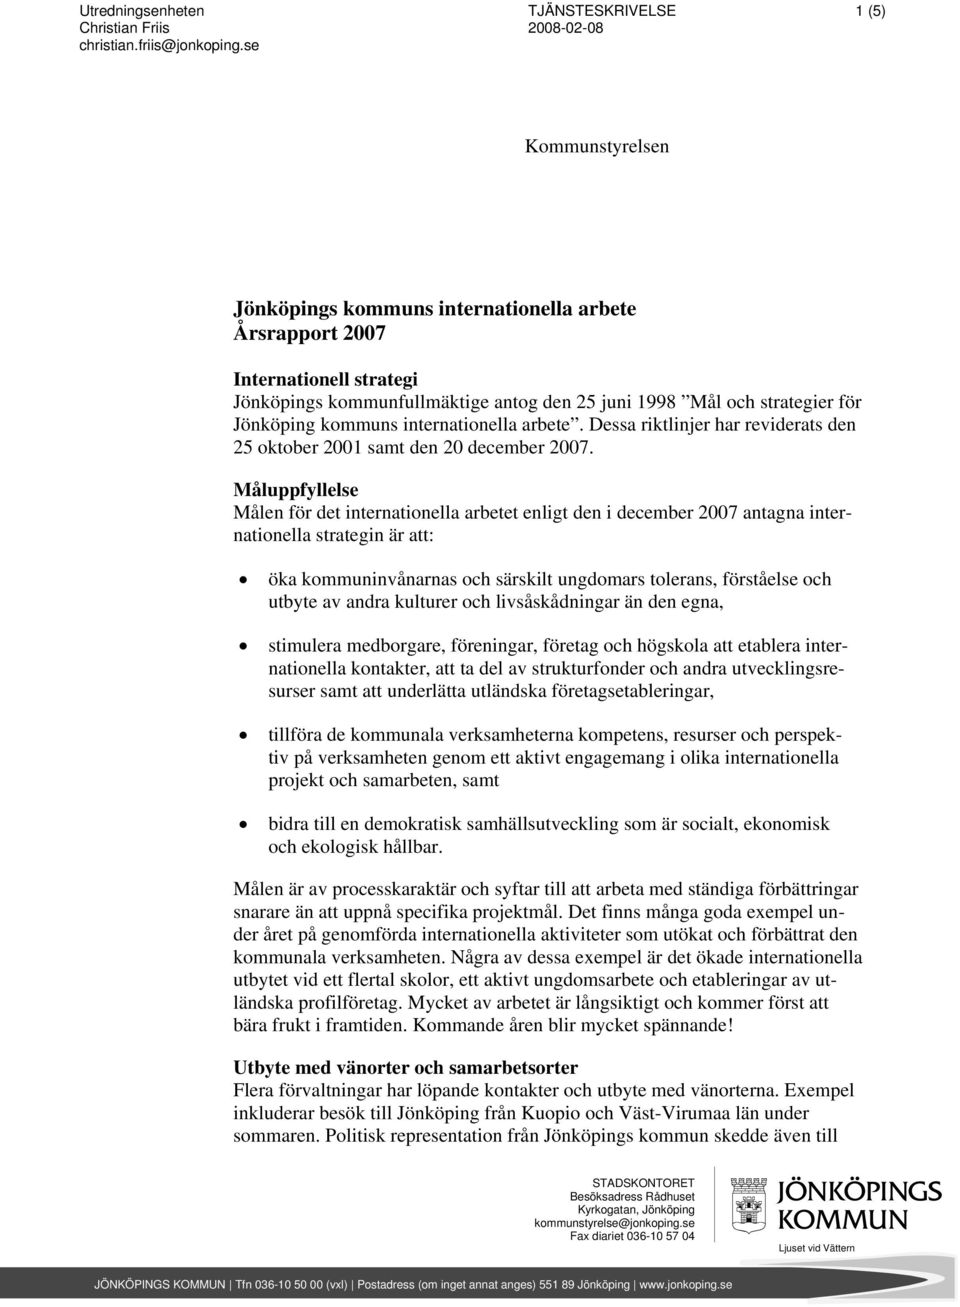 strategier för Jönköping kommuns internationella arbete. Dessa riktlinjer har reviderats den 25 oktober 2001 samt den 20 december 2007.